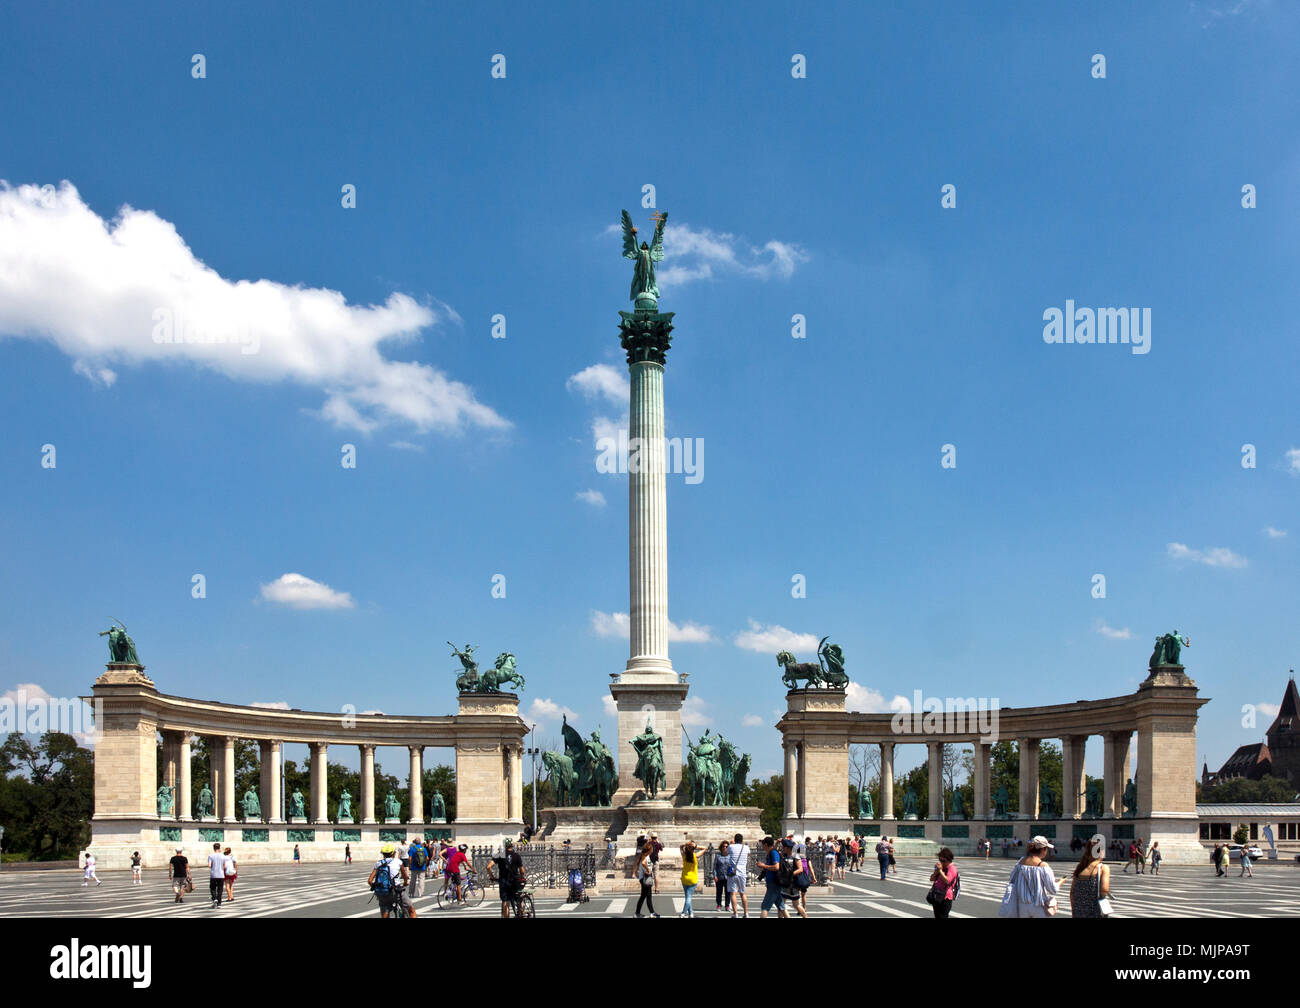 Monumento millenario in Heroes Square, Budapest, centri su un grande cenotafio in pietra circondato da un ornamento della catena di ferro. Foto Stock